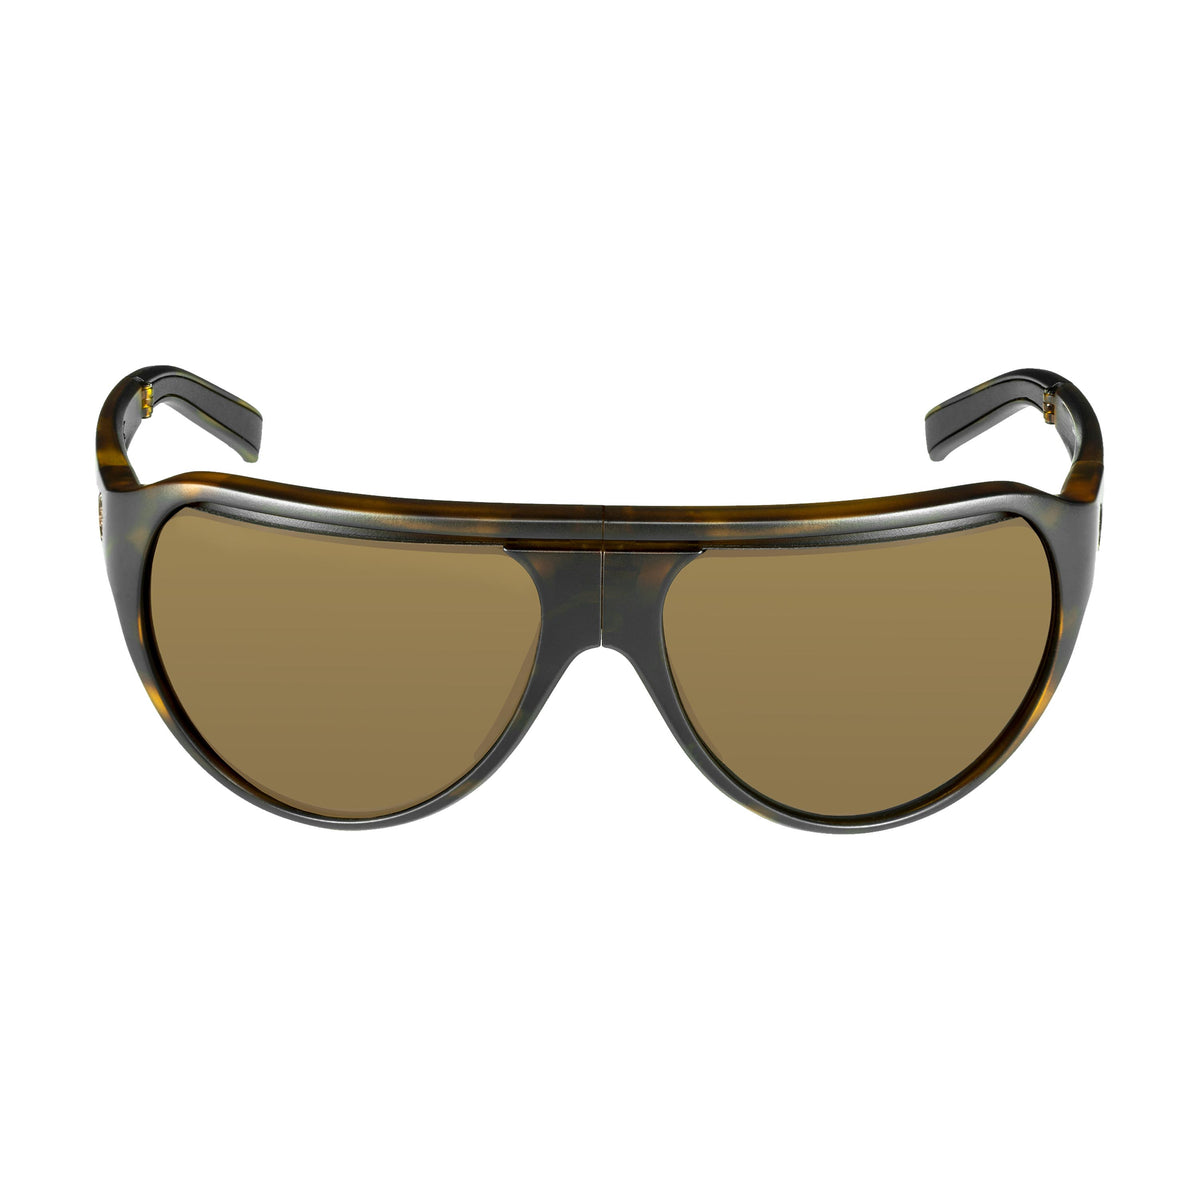 Popticals, Premium Compact Sunglasses, PopAir, 300010-CUNP, Polarized Sunglasses, Matte Tortoise Frame, Brown Lenses, Front Tilt View